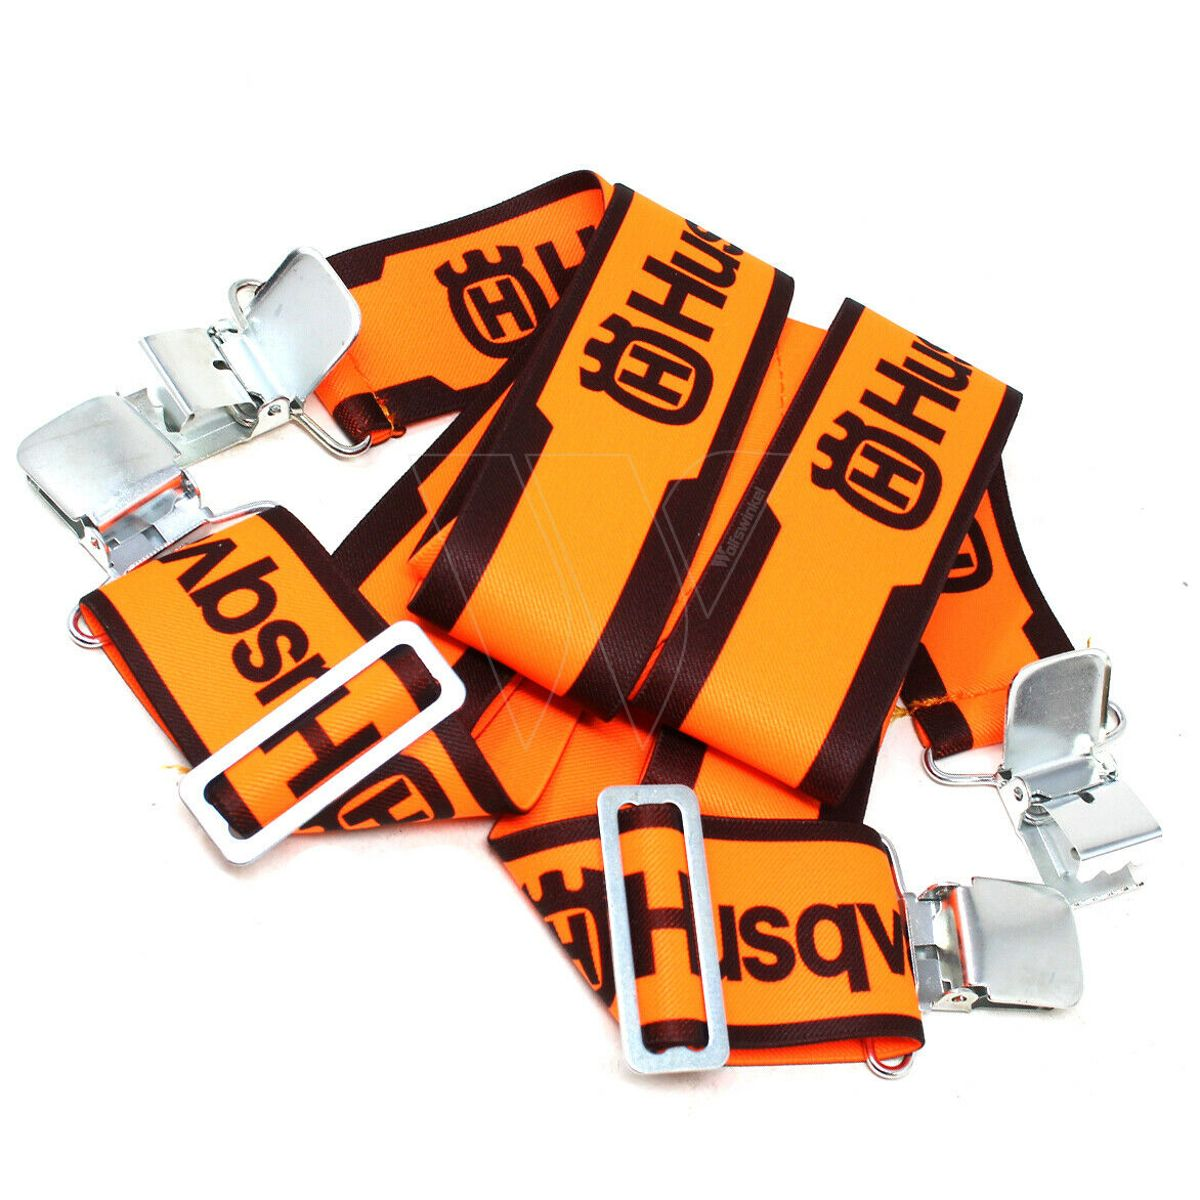 Husqvarna hosenträger mit clips orange 505618500 kaufen?